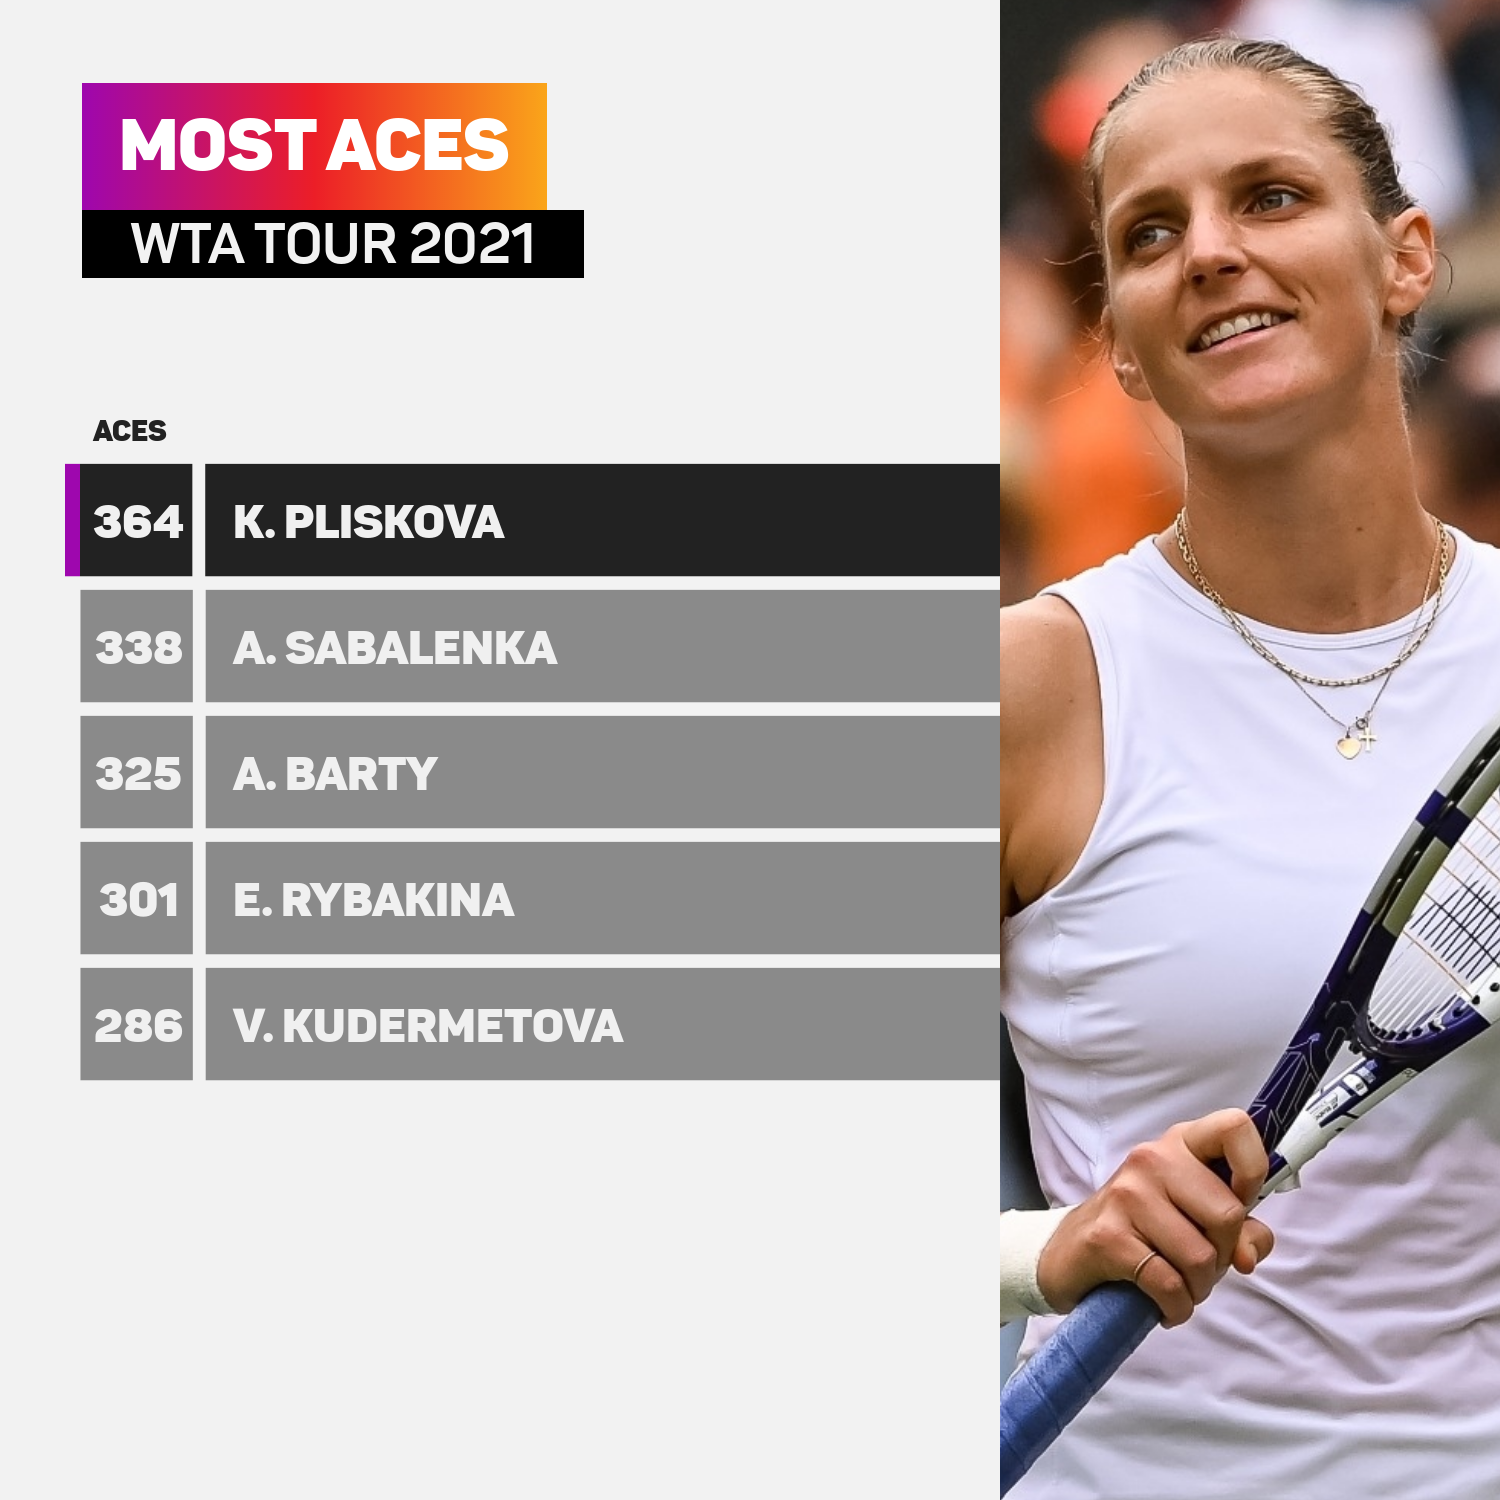 Karolina Pliskova most aces WTA Tour 2021